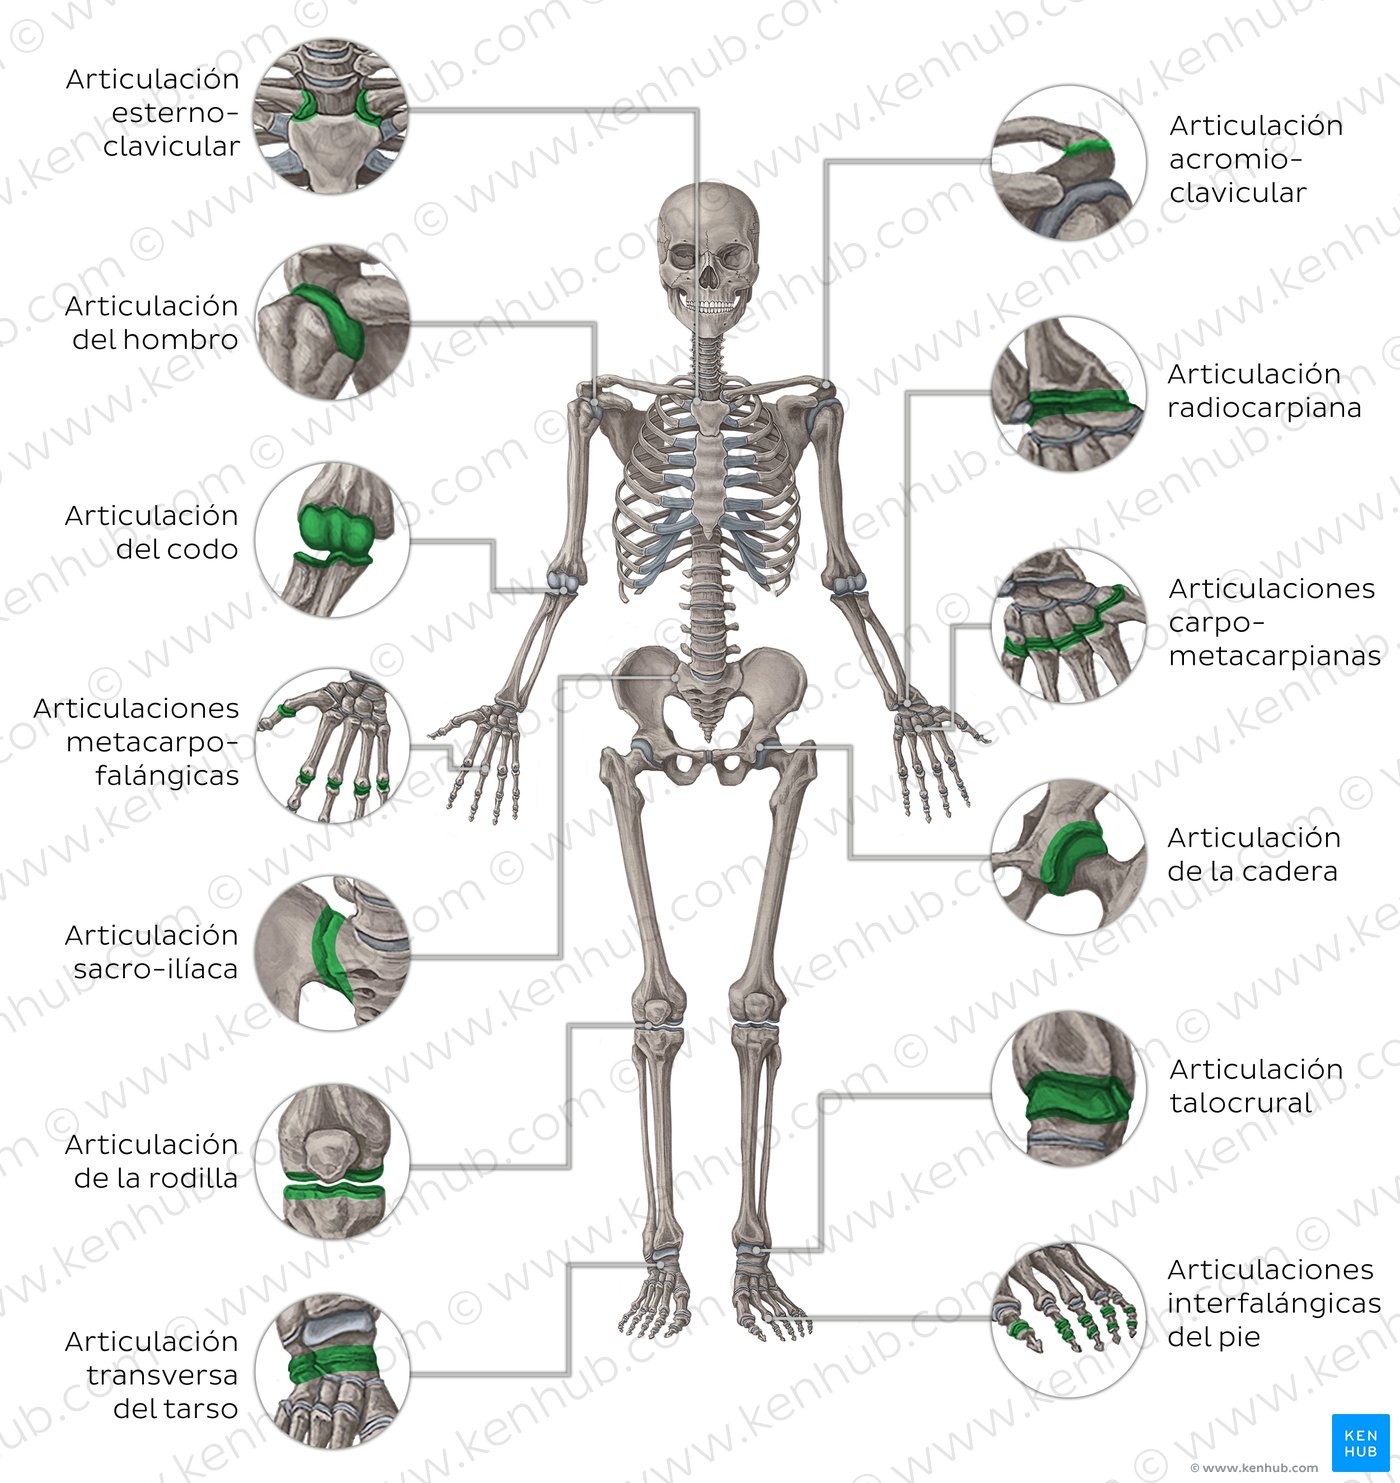 Principales articulaciones del cuerpo humano